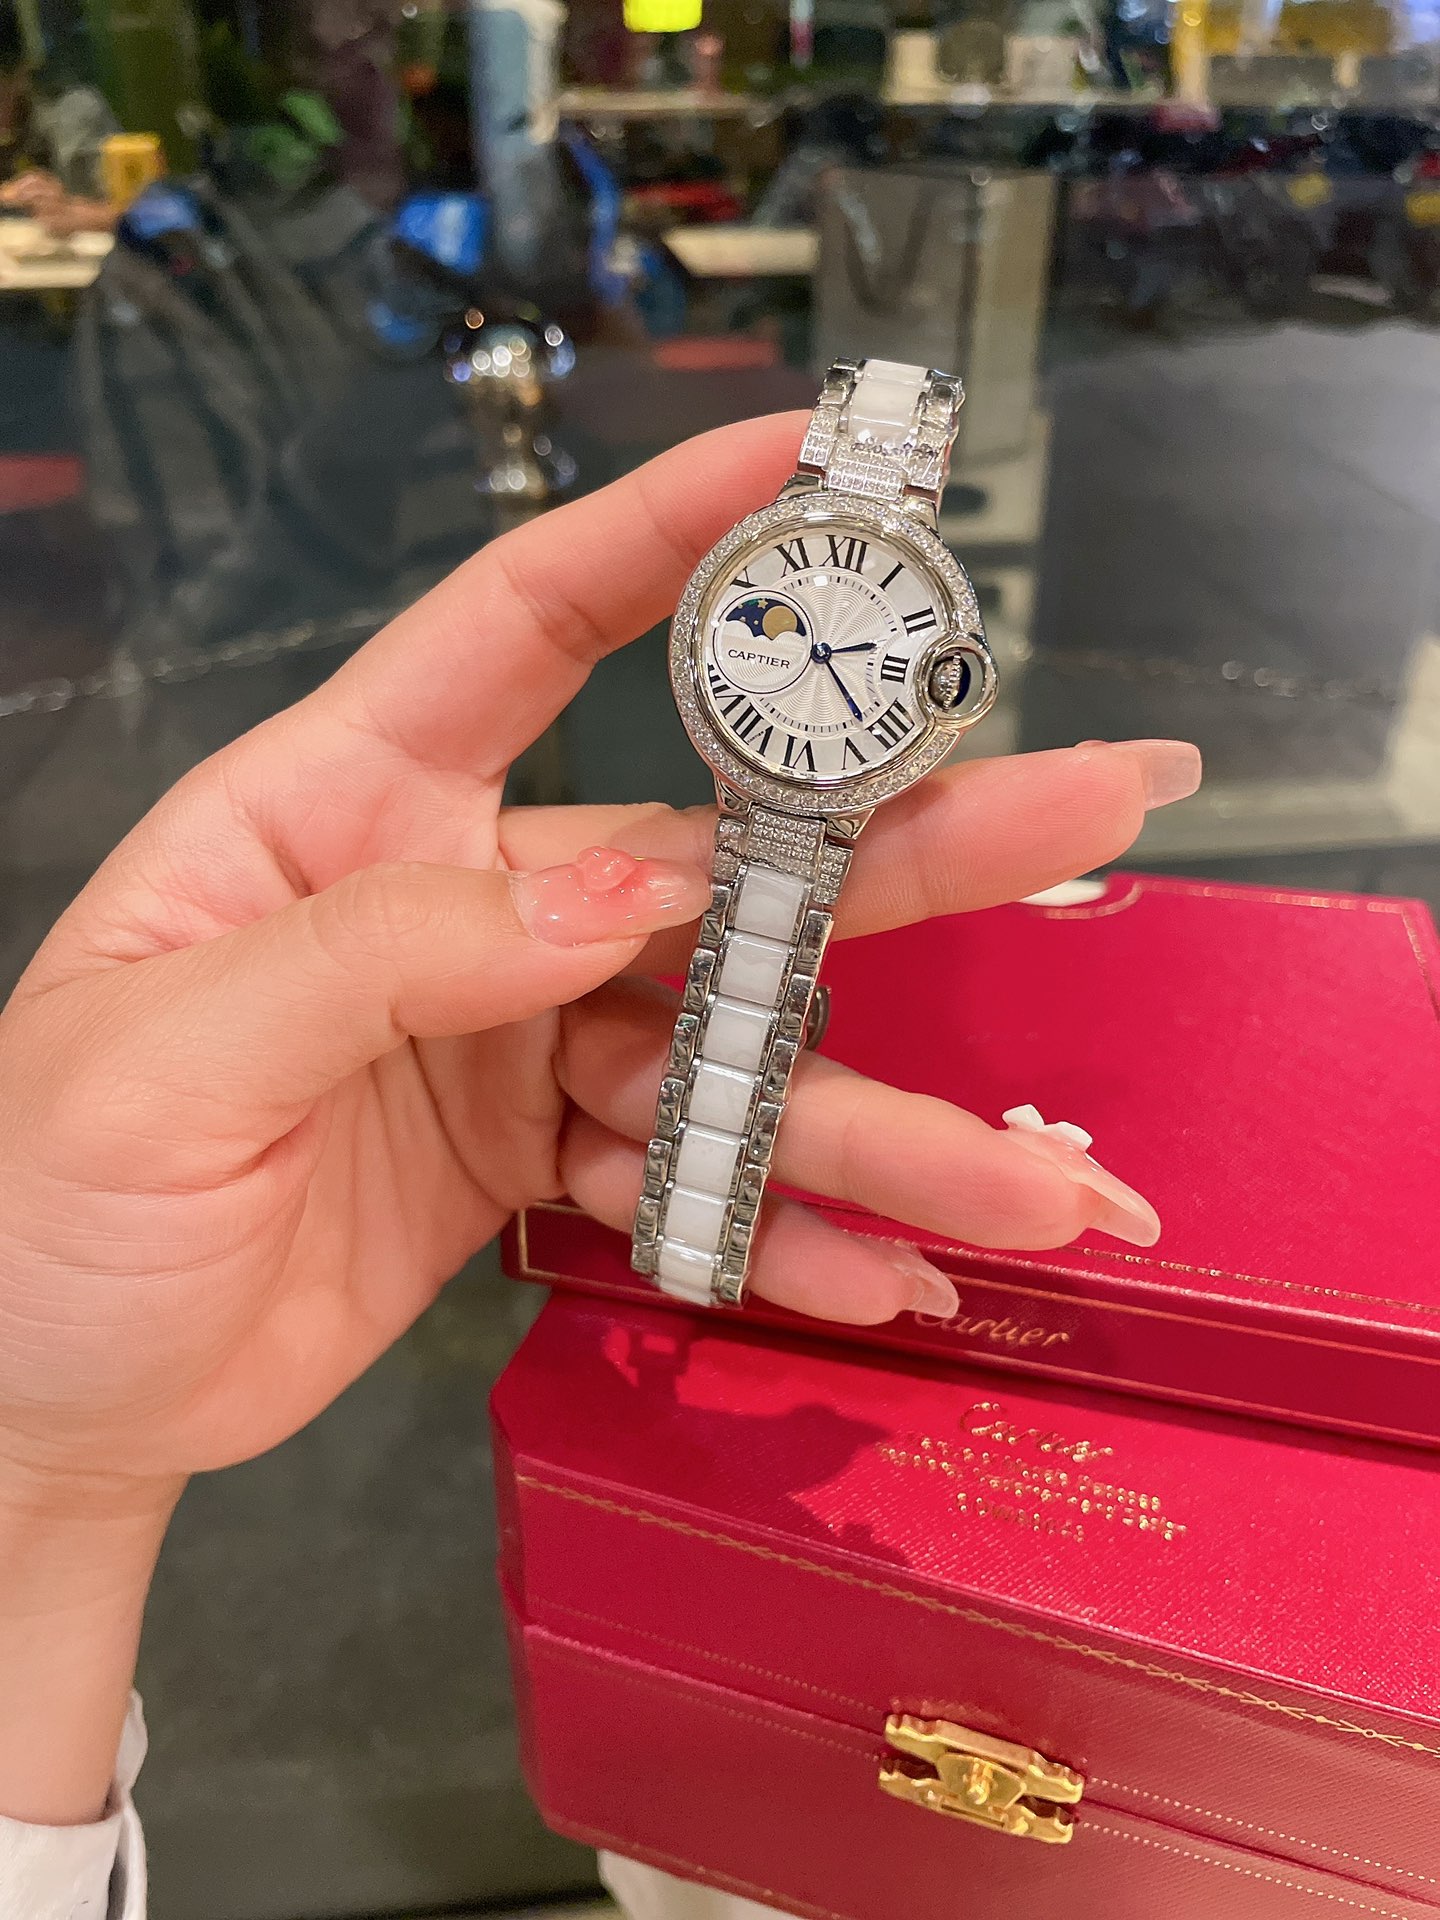 CARTIERカルティエ 真贋 時計スーパーコピー フランス 薄い腕時計 スチールバンド レザー 新品 ホワイト_2